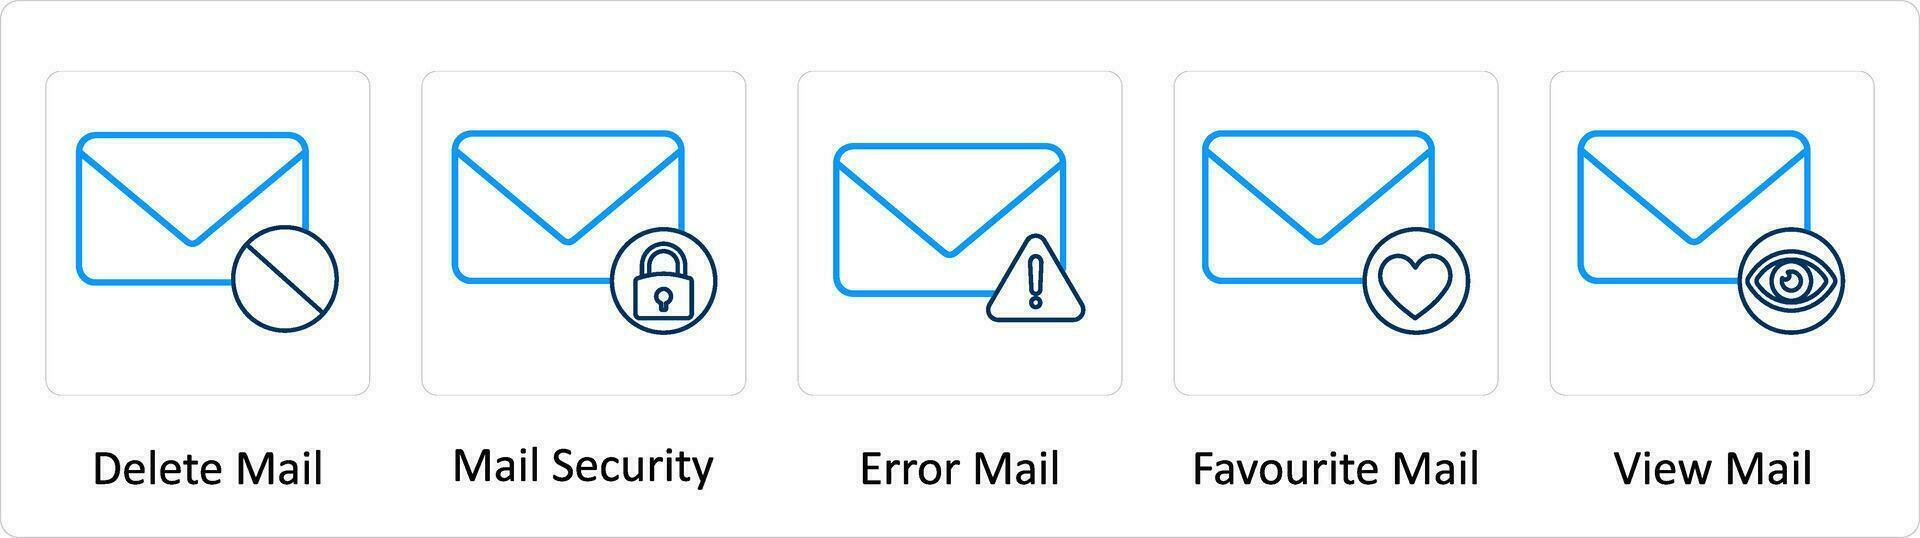 uma conjunto do 5 extra ícones Como excluir correspondência, enviar segurança, erro enviar vetor